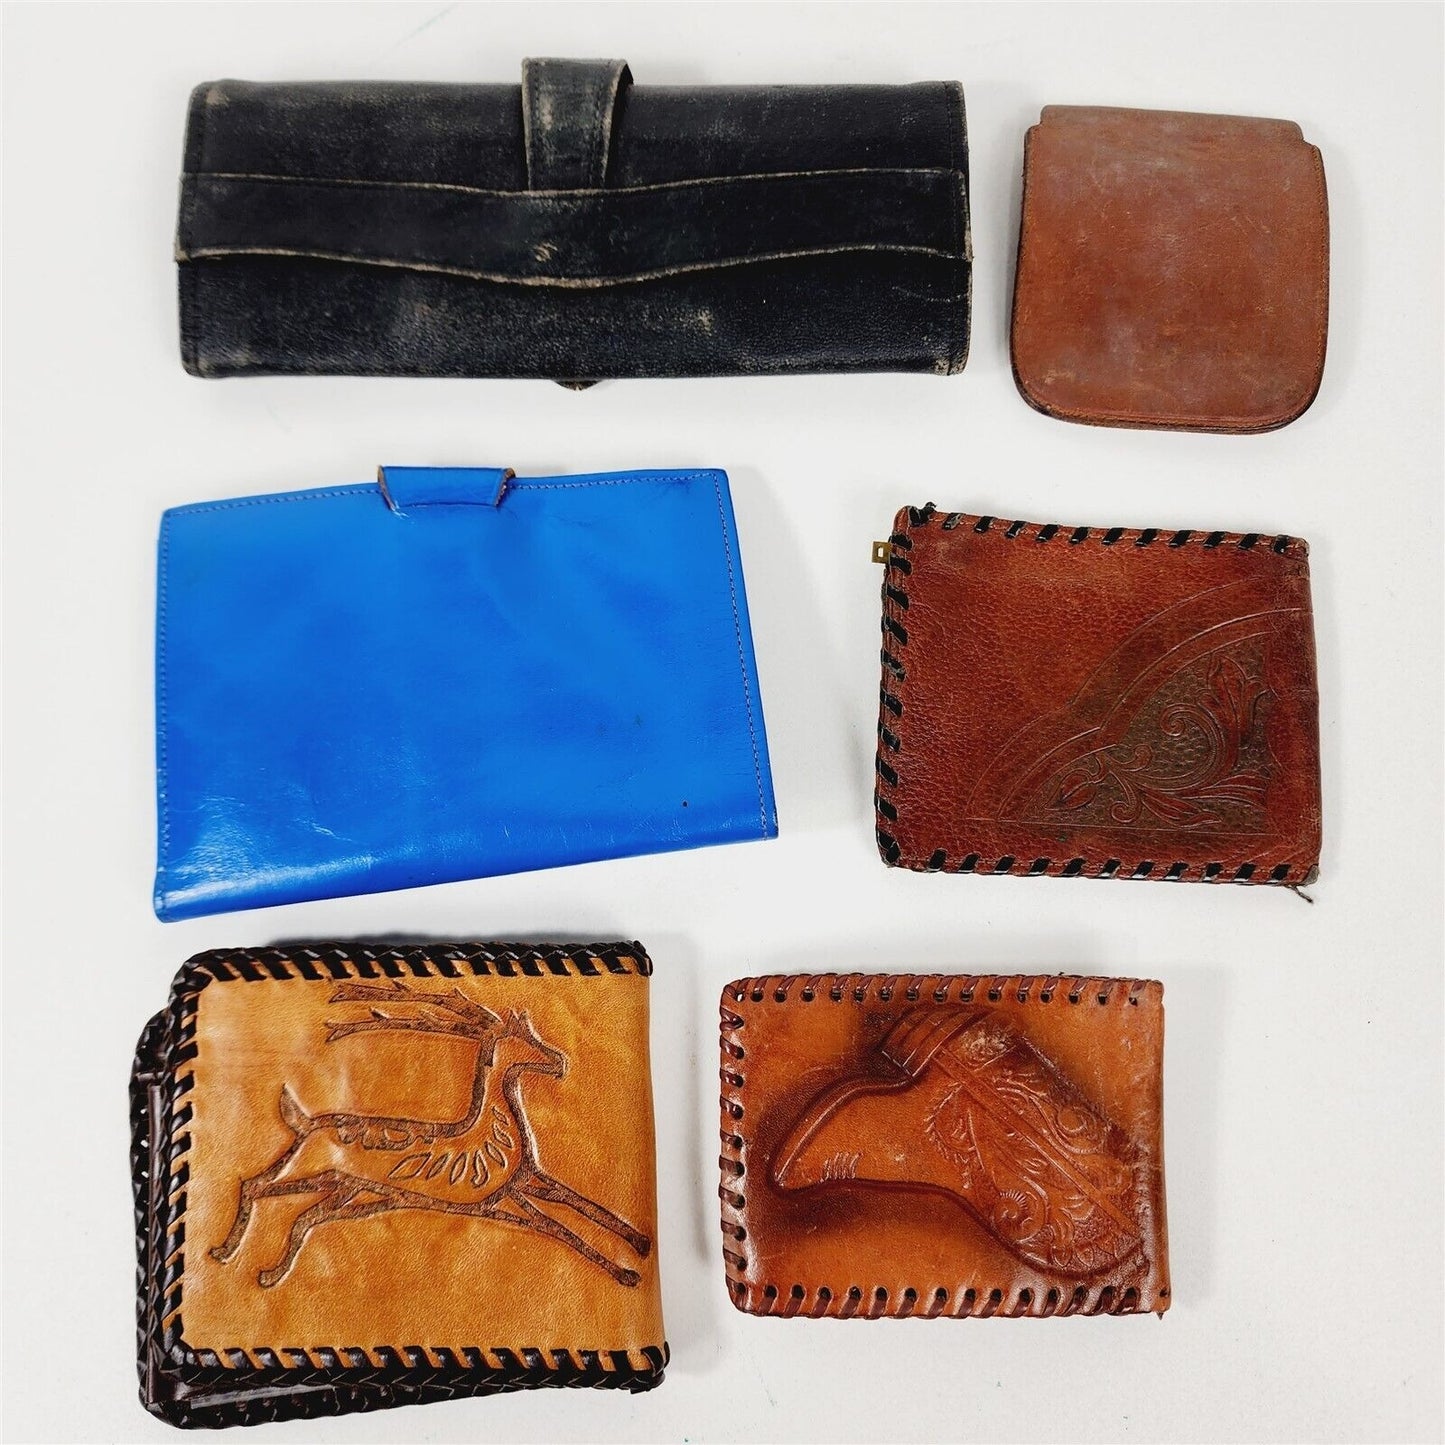 6 Vintage Leather Wallets Tooled Brown Blue Black - 3"-8" wide